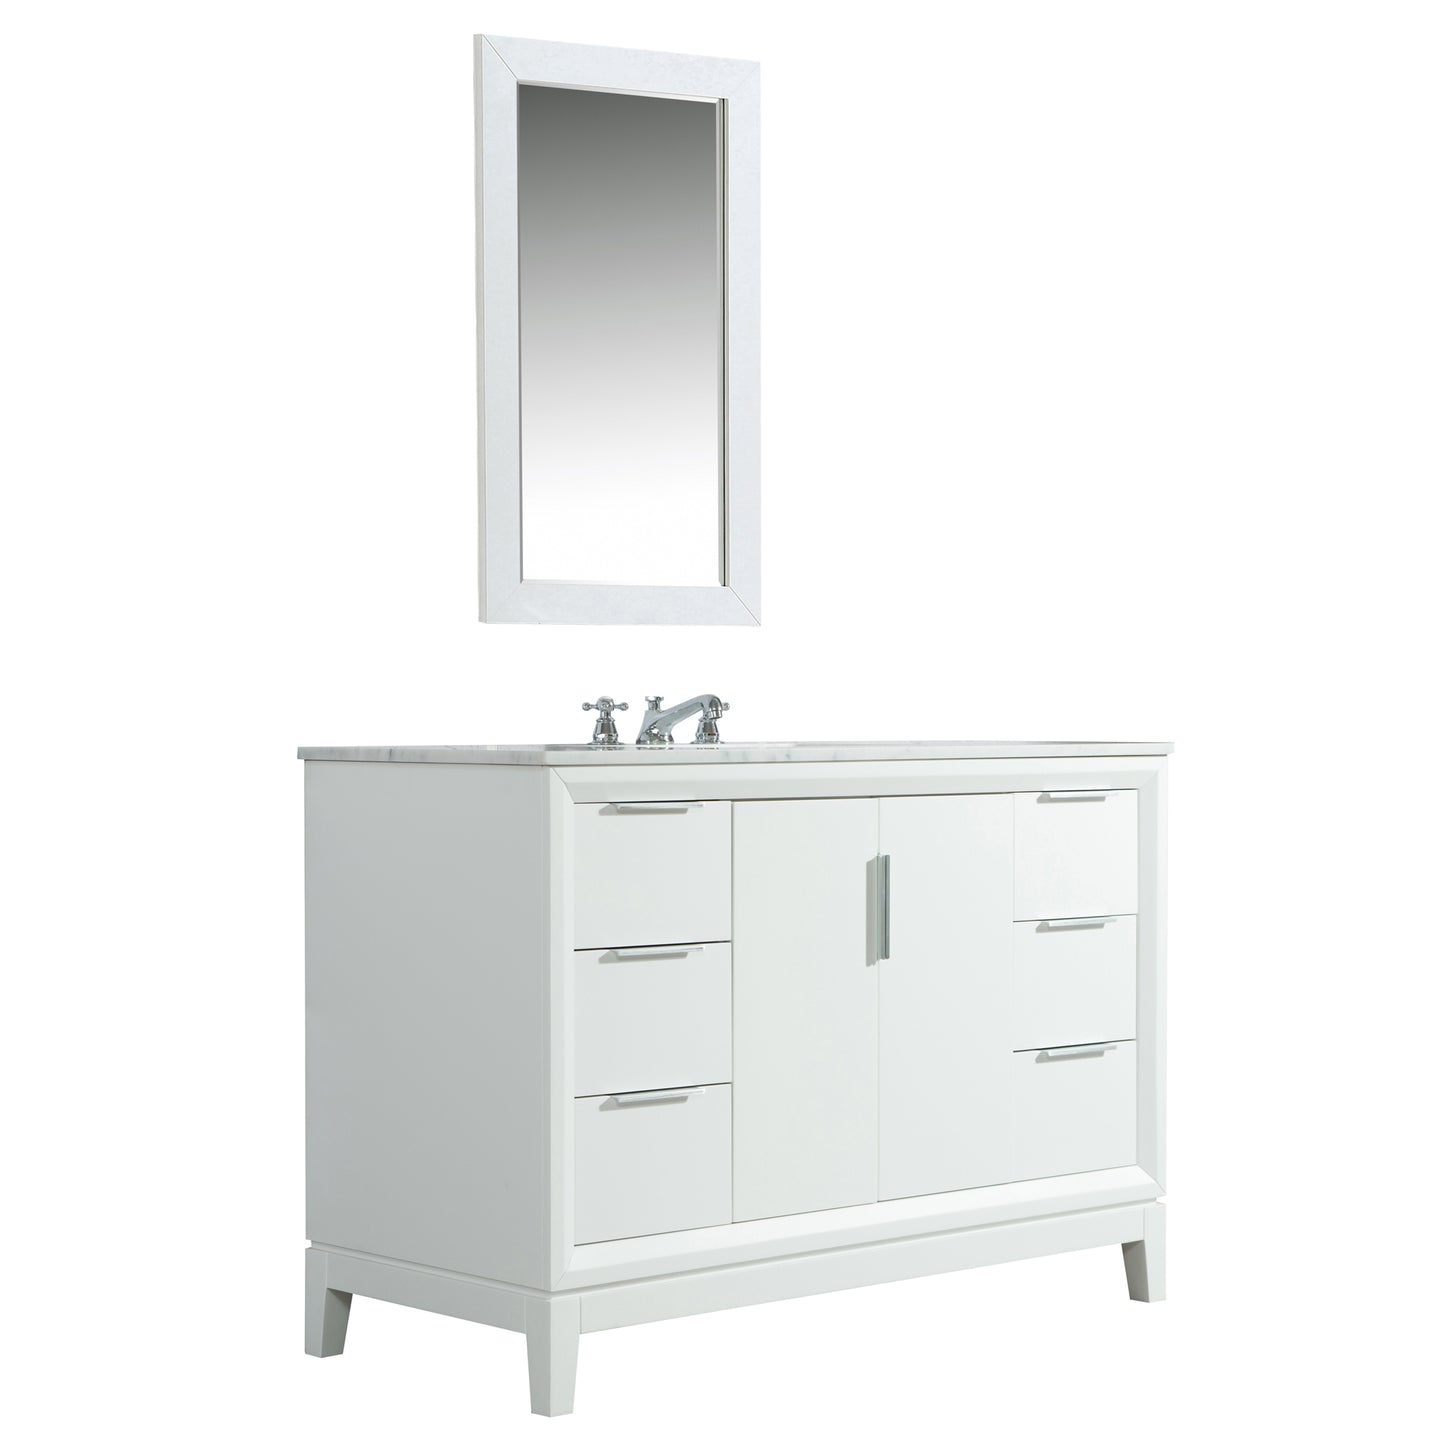 Water Creation Elizabeth 48" Single Sink Carrara White Marble Vanity with Matching Mirror - Luxe Bathroom Vanities